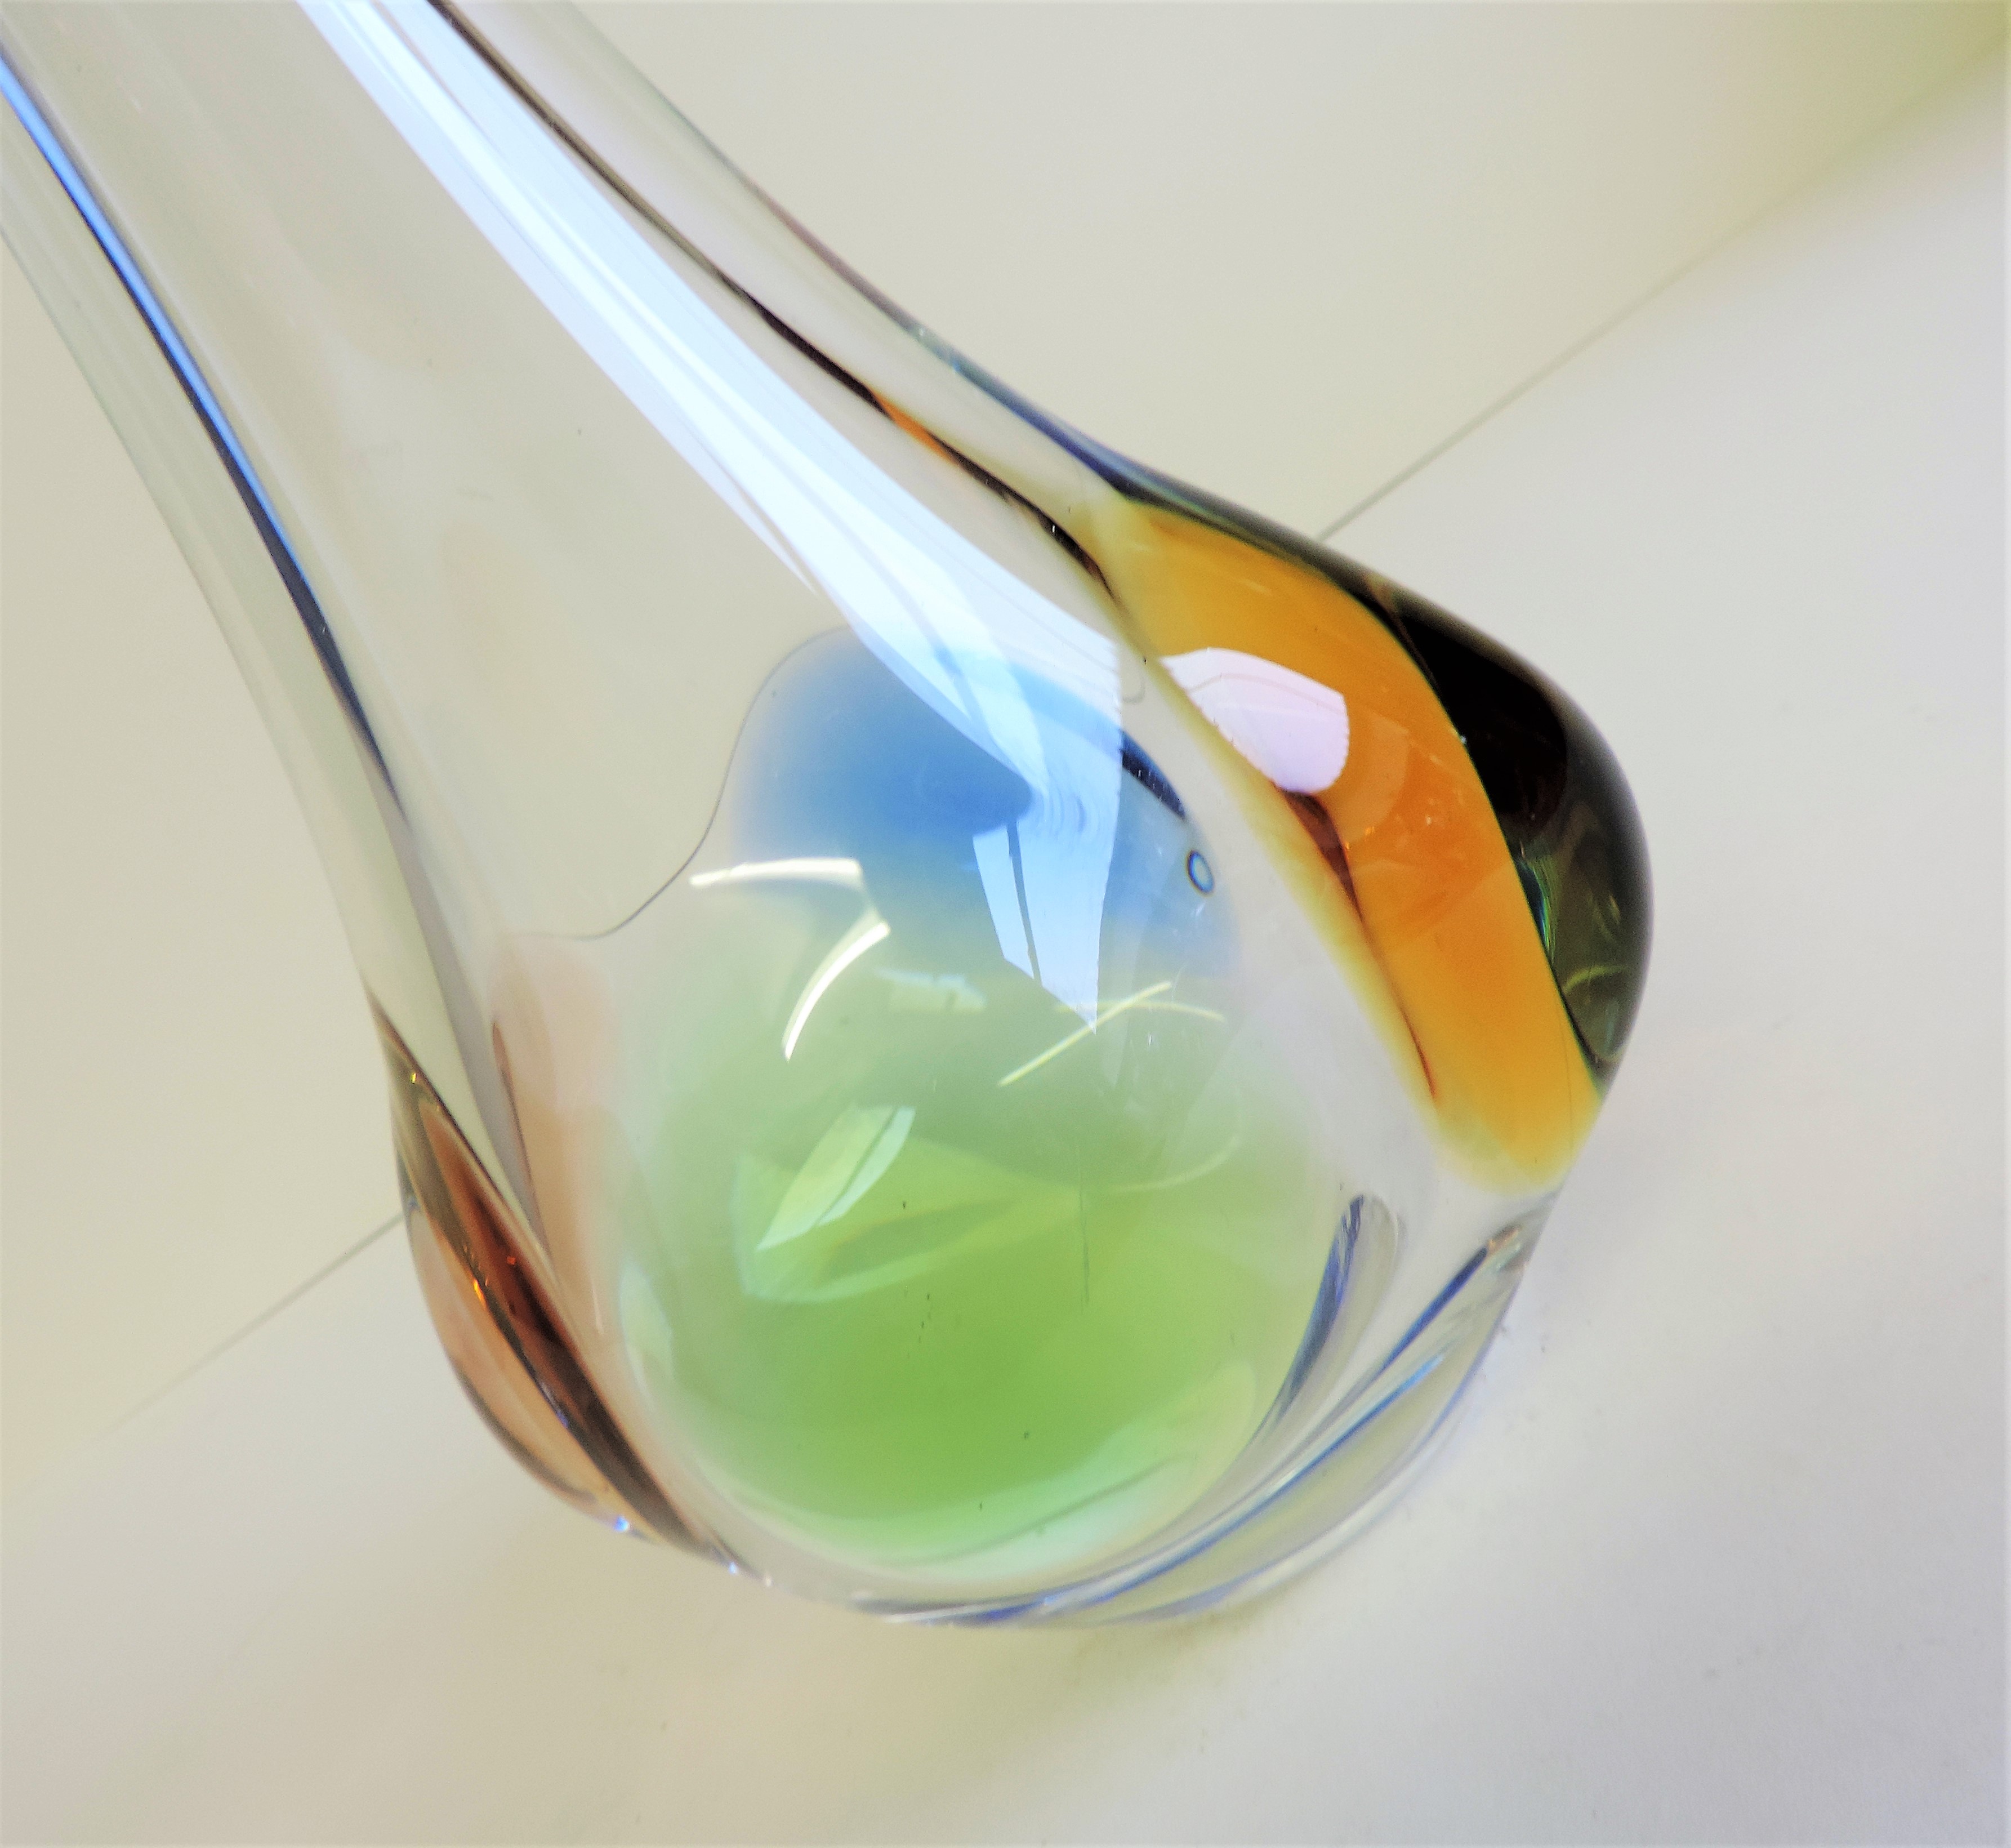 Frantisek Zemek Art Glass Vase Rhapsody collection 23cm tall - Image 2 of 3